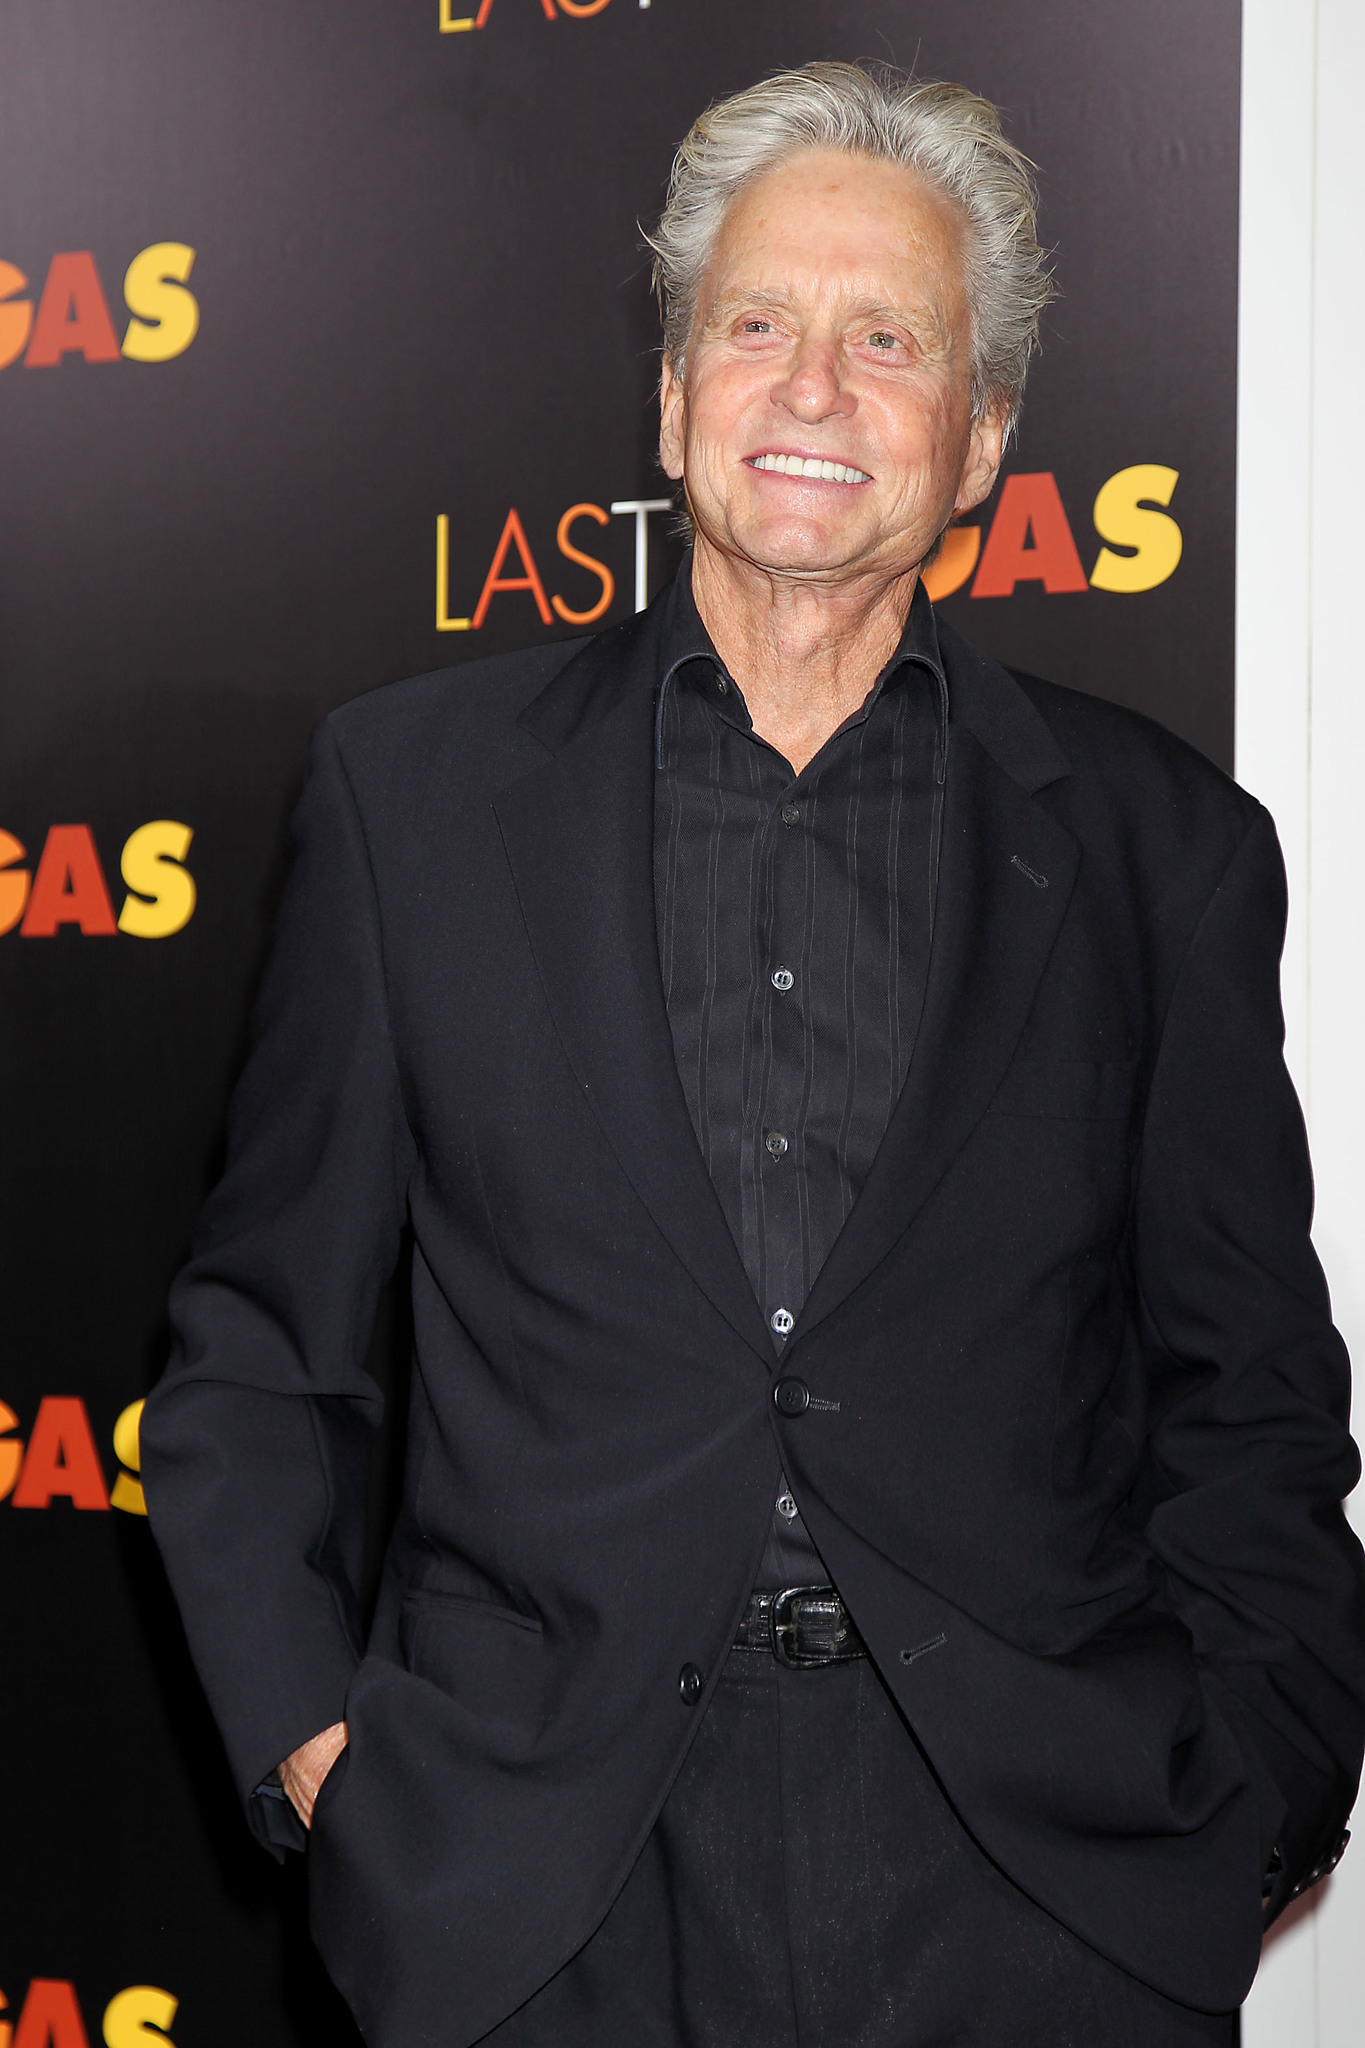 Michael Douglas at event of Paskutini karta Las Vegase (2013)